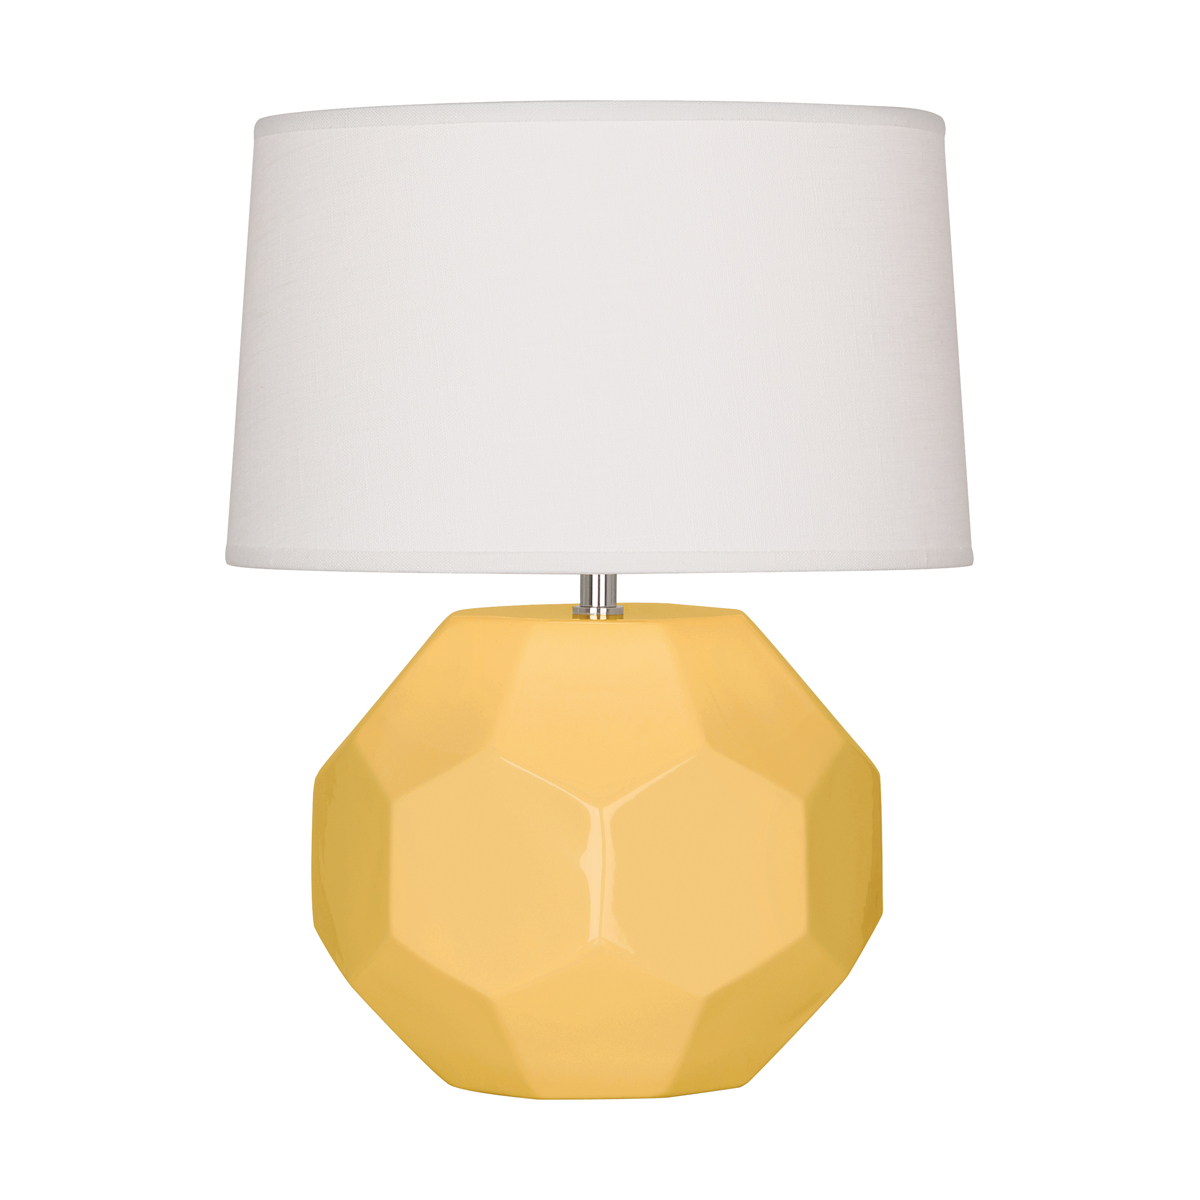 Franklin Accent Lamp Style #SU02